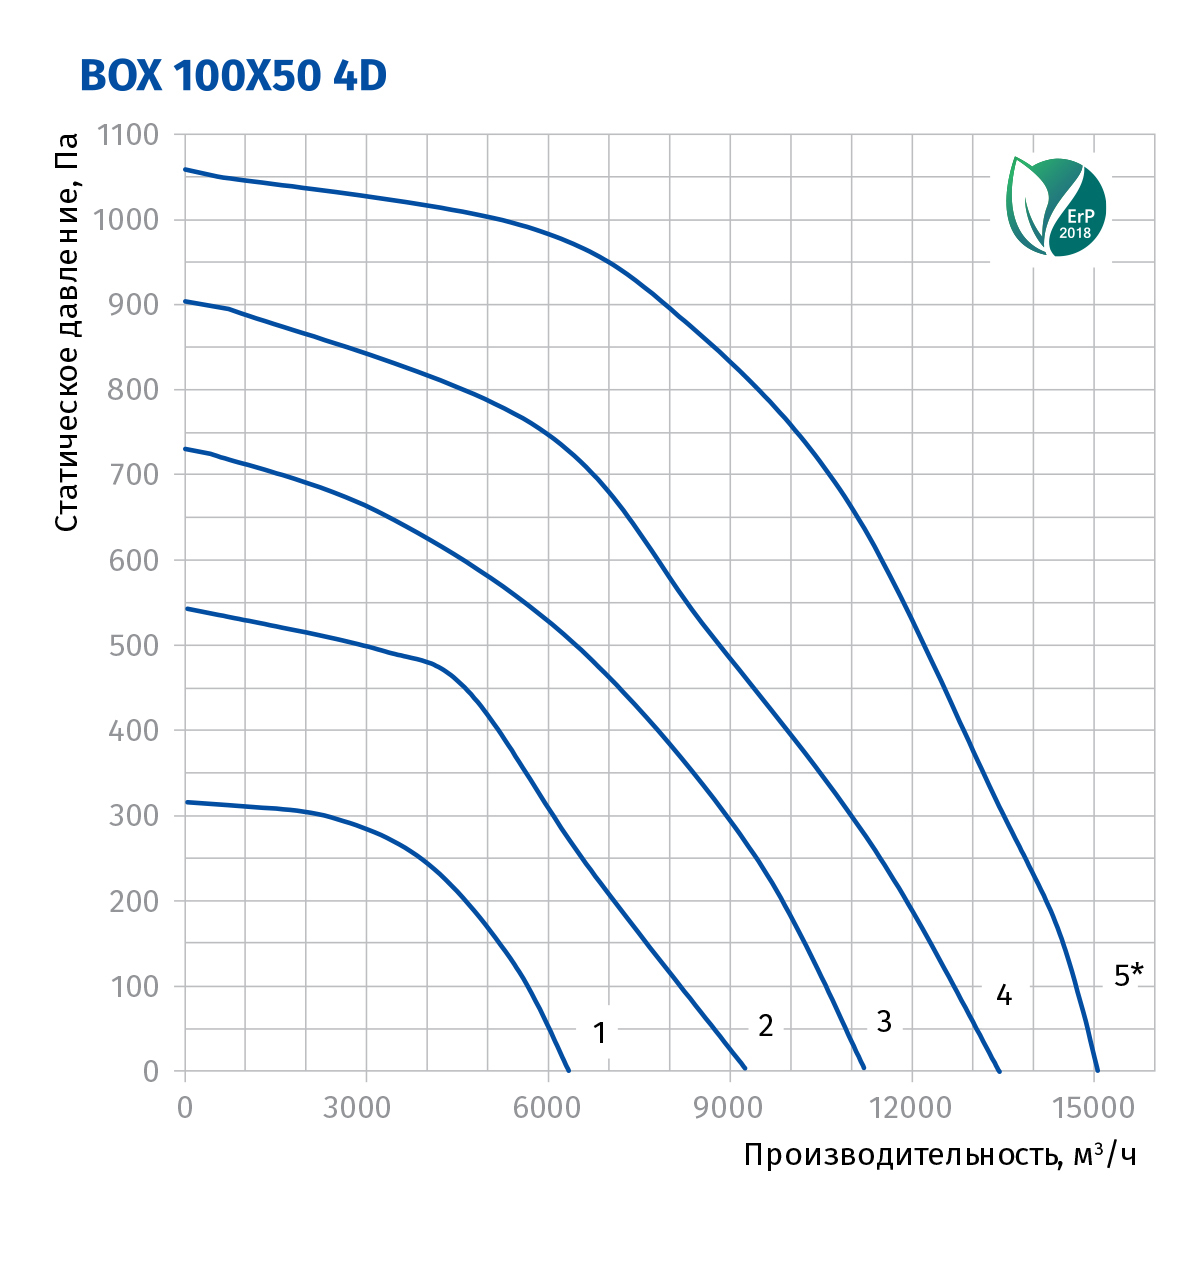 Blauberg Box 100x50 4D Диаграмма производительности